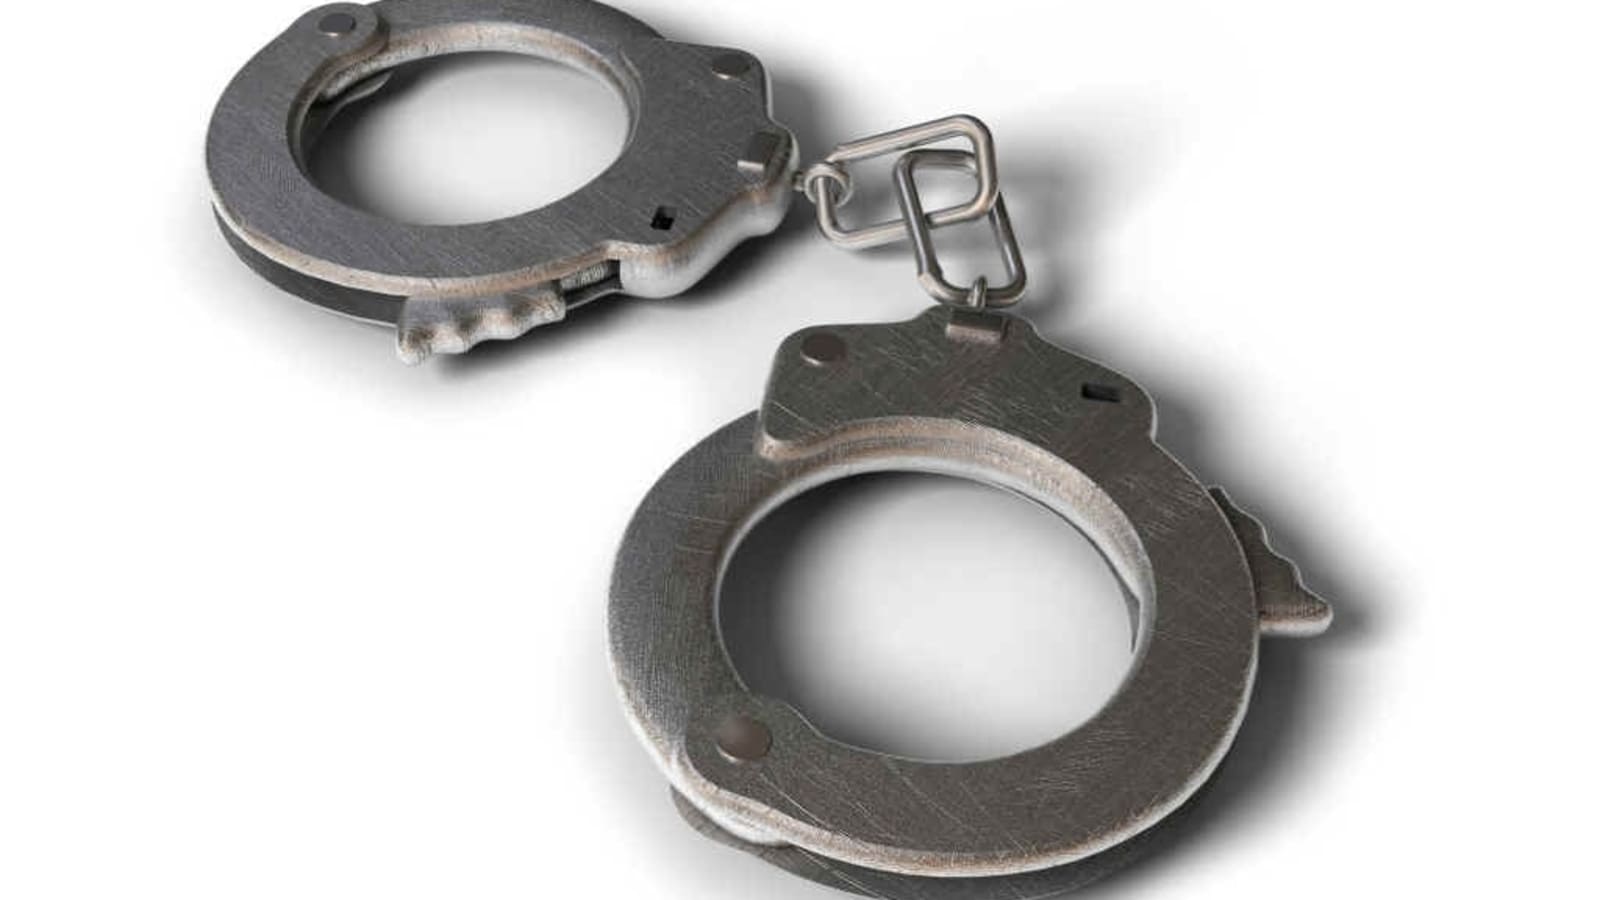 Bengal-based ‘fake currency racket’ busted, 2 men arrested | Kolkata